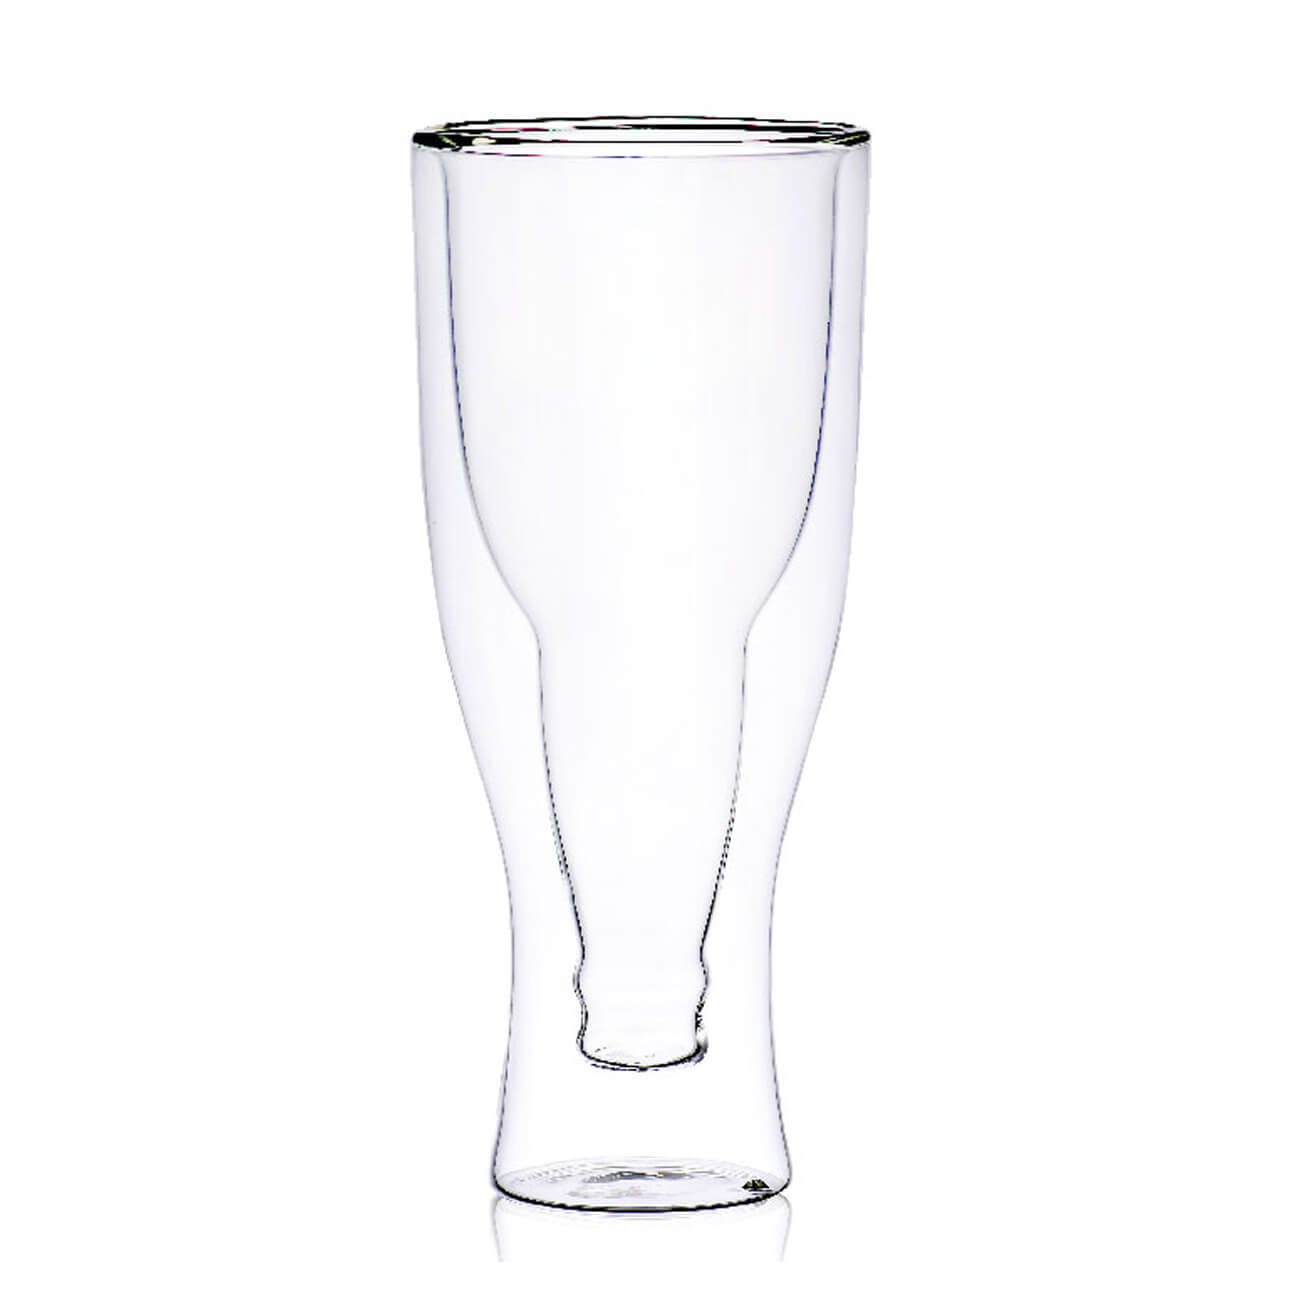 Kuchenland Стакан для пива, 430 мл, стекло Б, Бутылка, Air shape